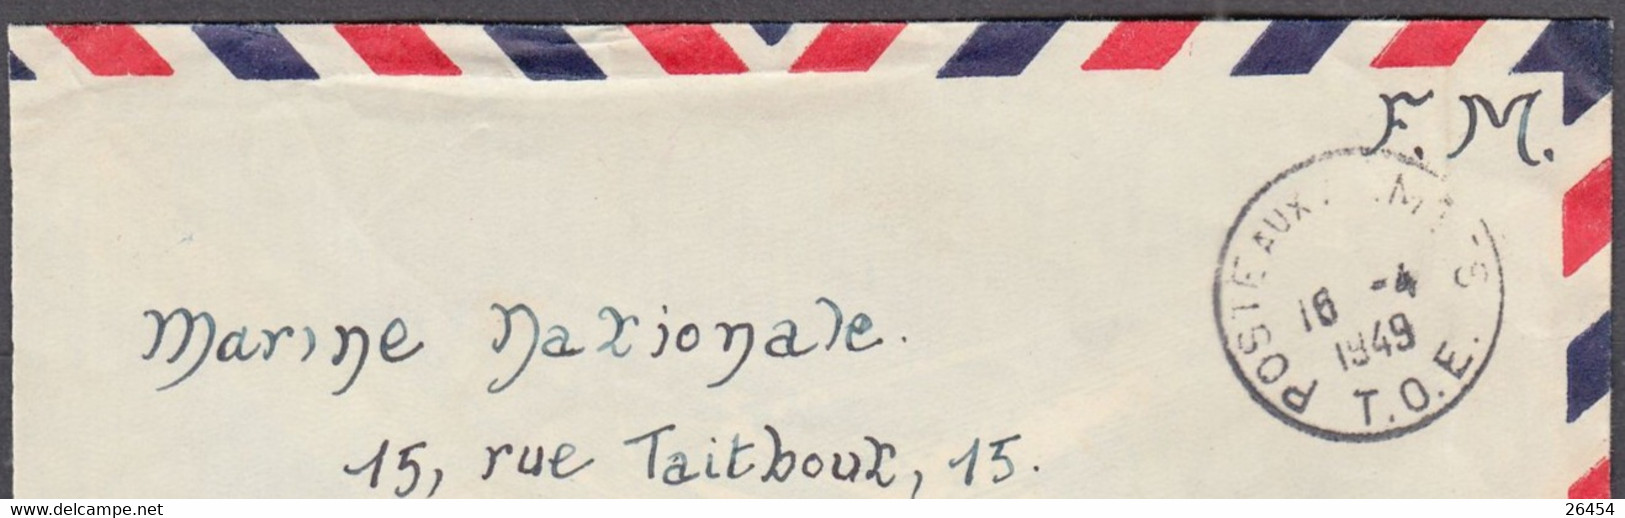 Enveloppe Avec Cachet   POSTE AUX ARMEES  T.O.E. Le 16 4 1949 Pour La MARINE NATIONALE à PARIS  En F.M. - Guerra D'Indocina/Vietnam